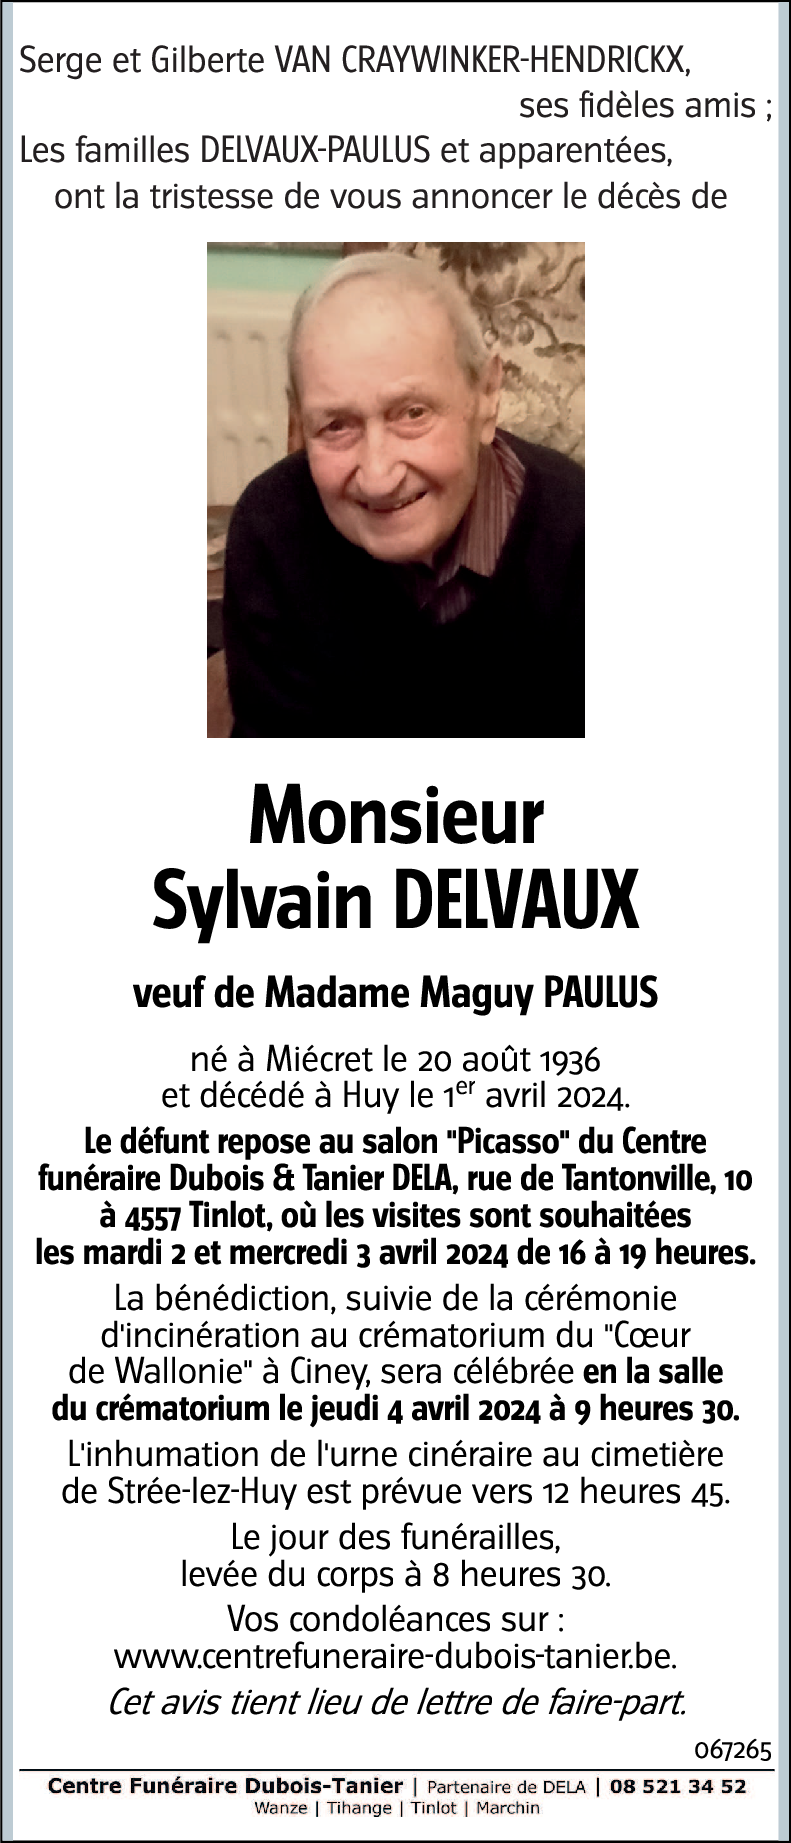 Sylvain DELVAUX